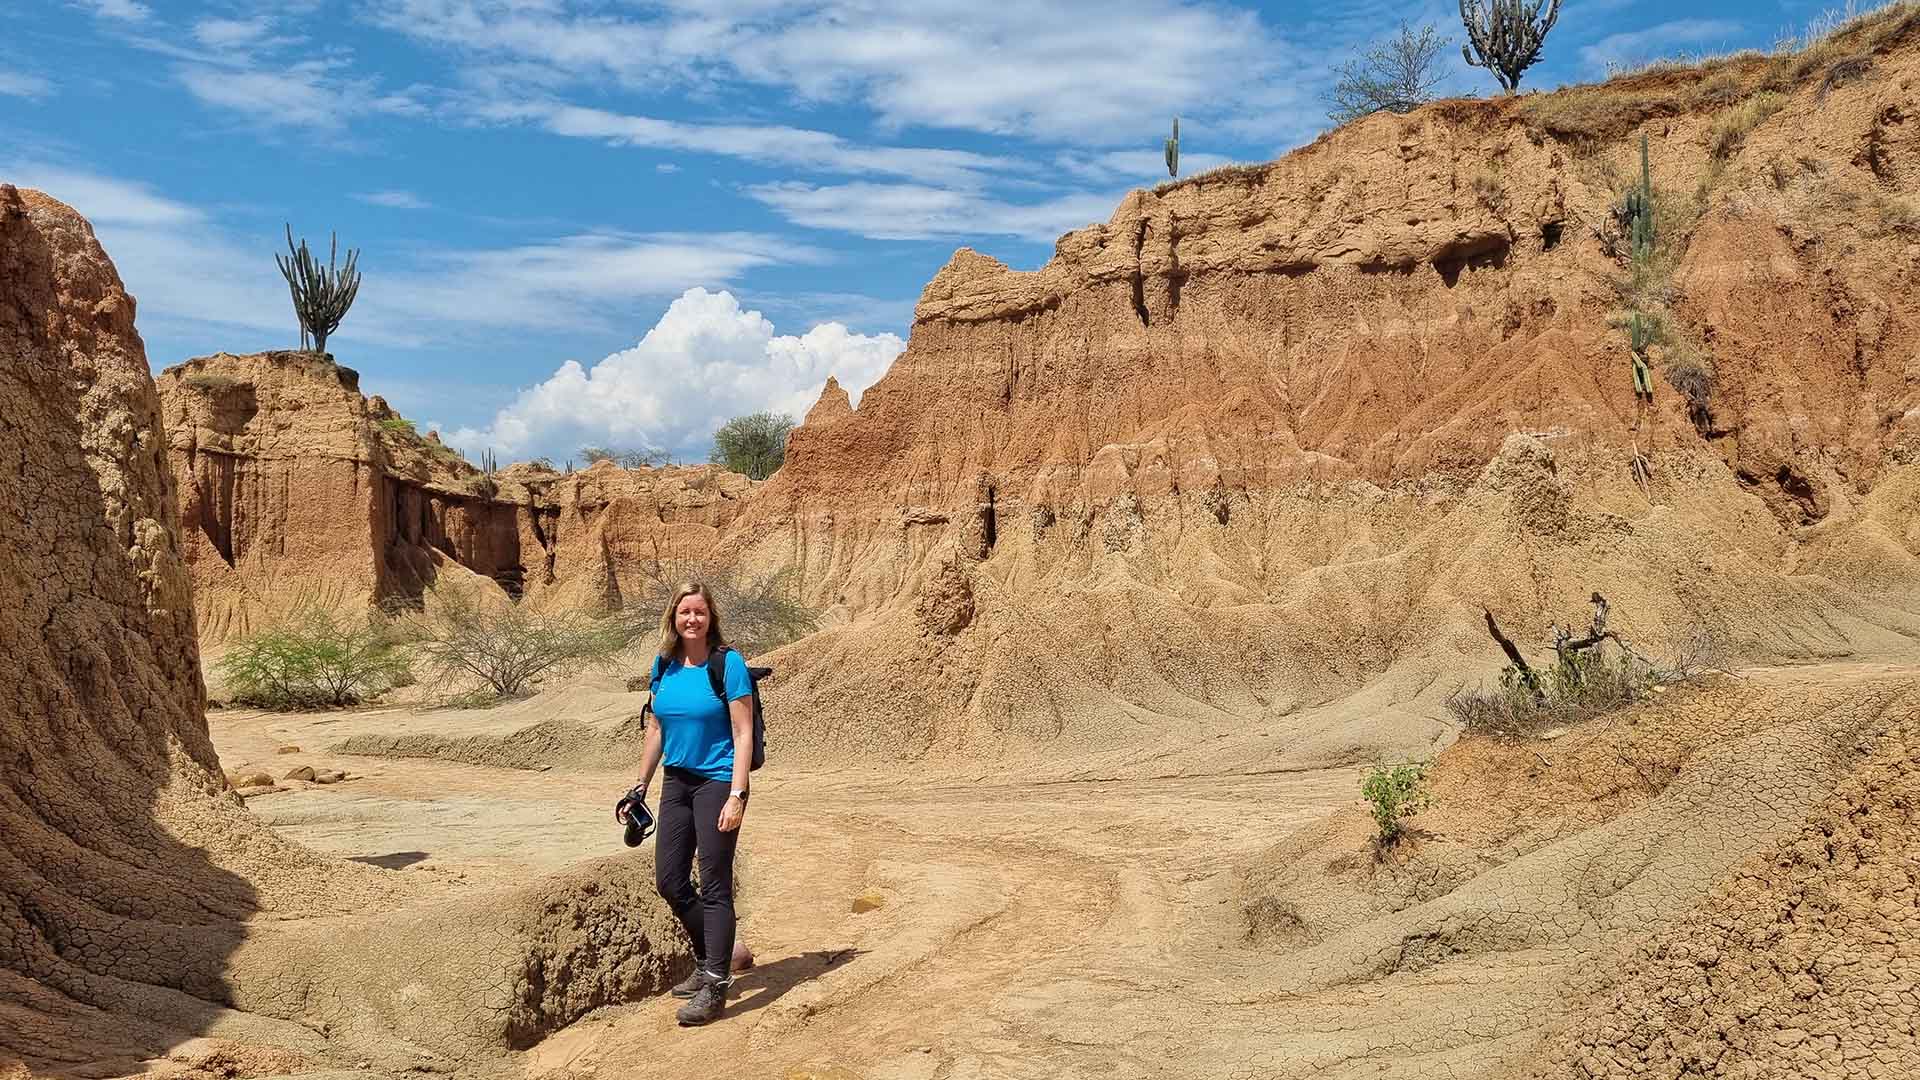 wandelaarster in rotsachtige woestijn